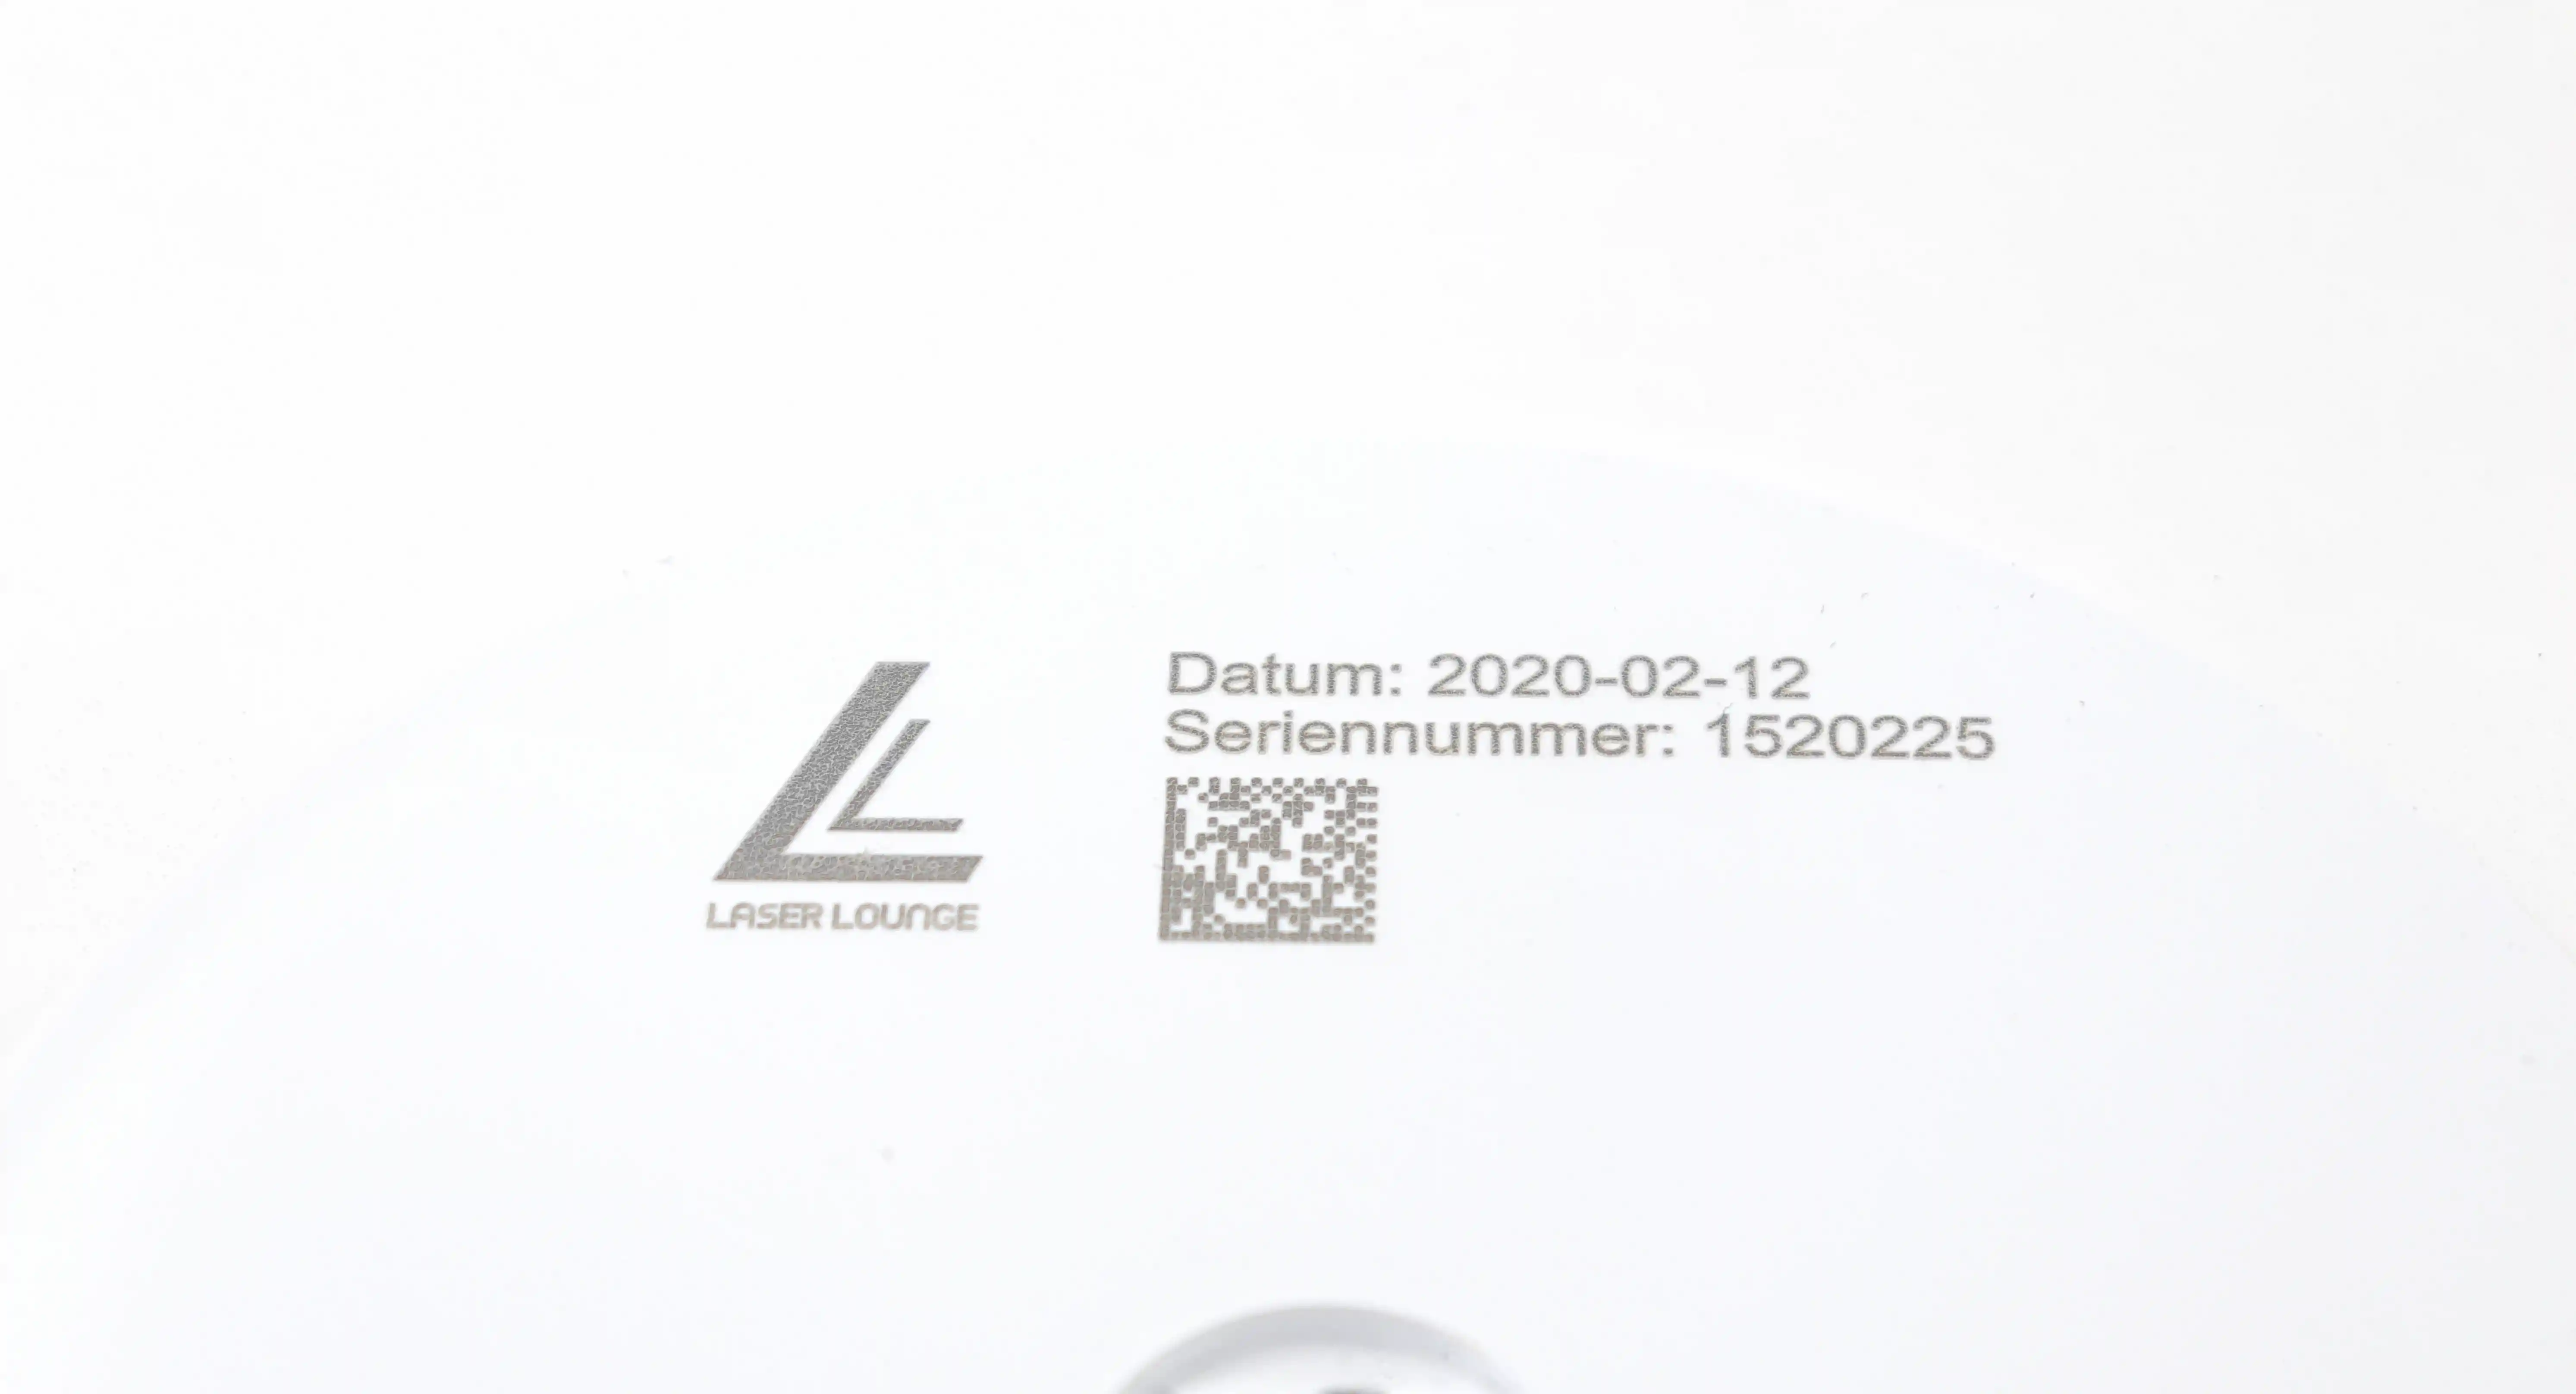 Laser Lounge GmbH - Laserbeschriftung auf Kunststoffen